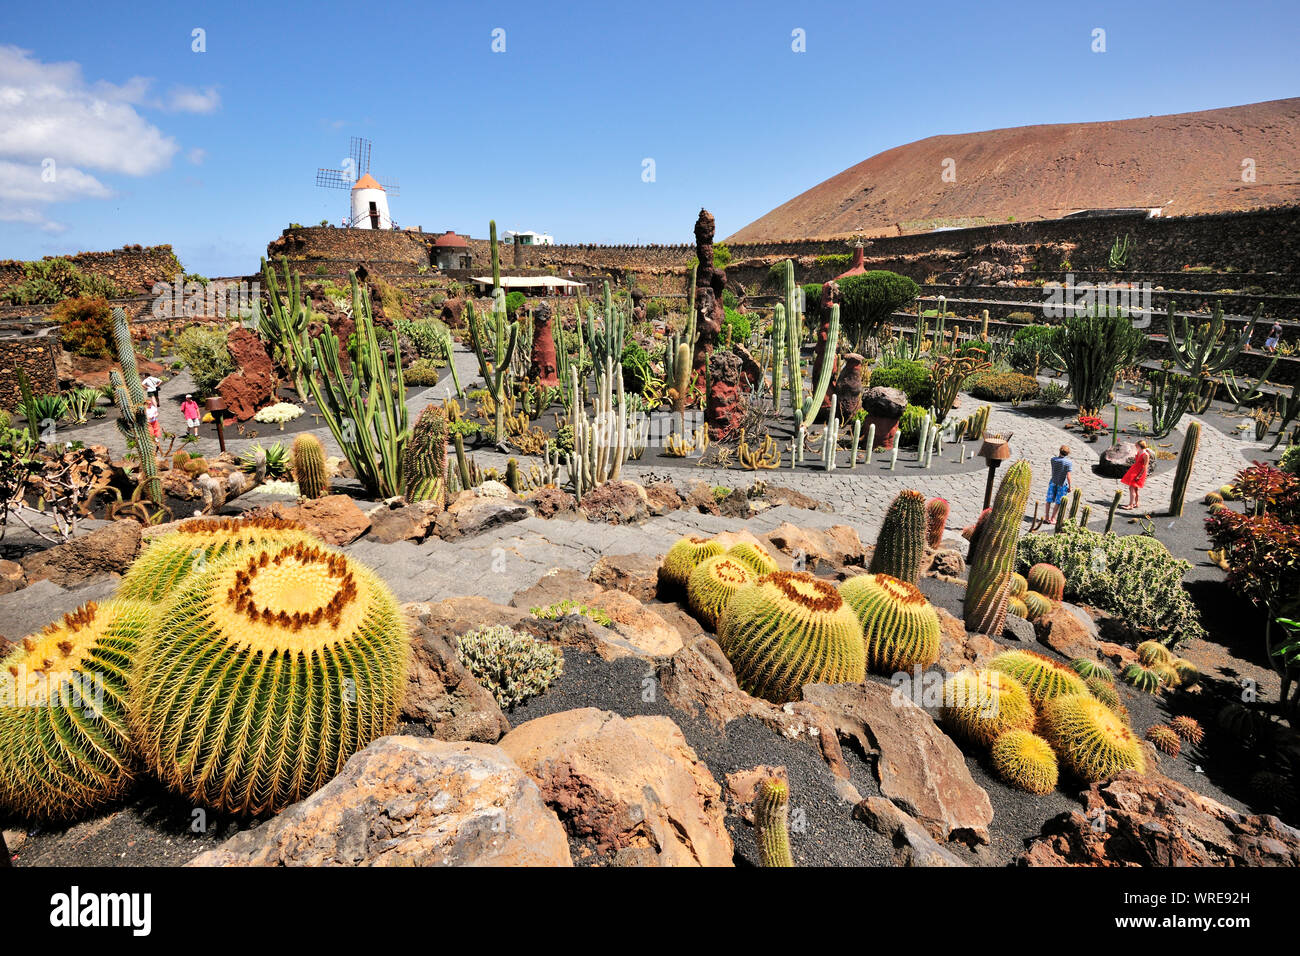 Jardin de Cactus (Cesar Manrique). Lanzarote, Kanarische Inseln. Spanien Stockfoto